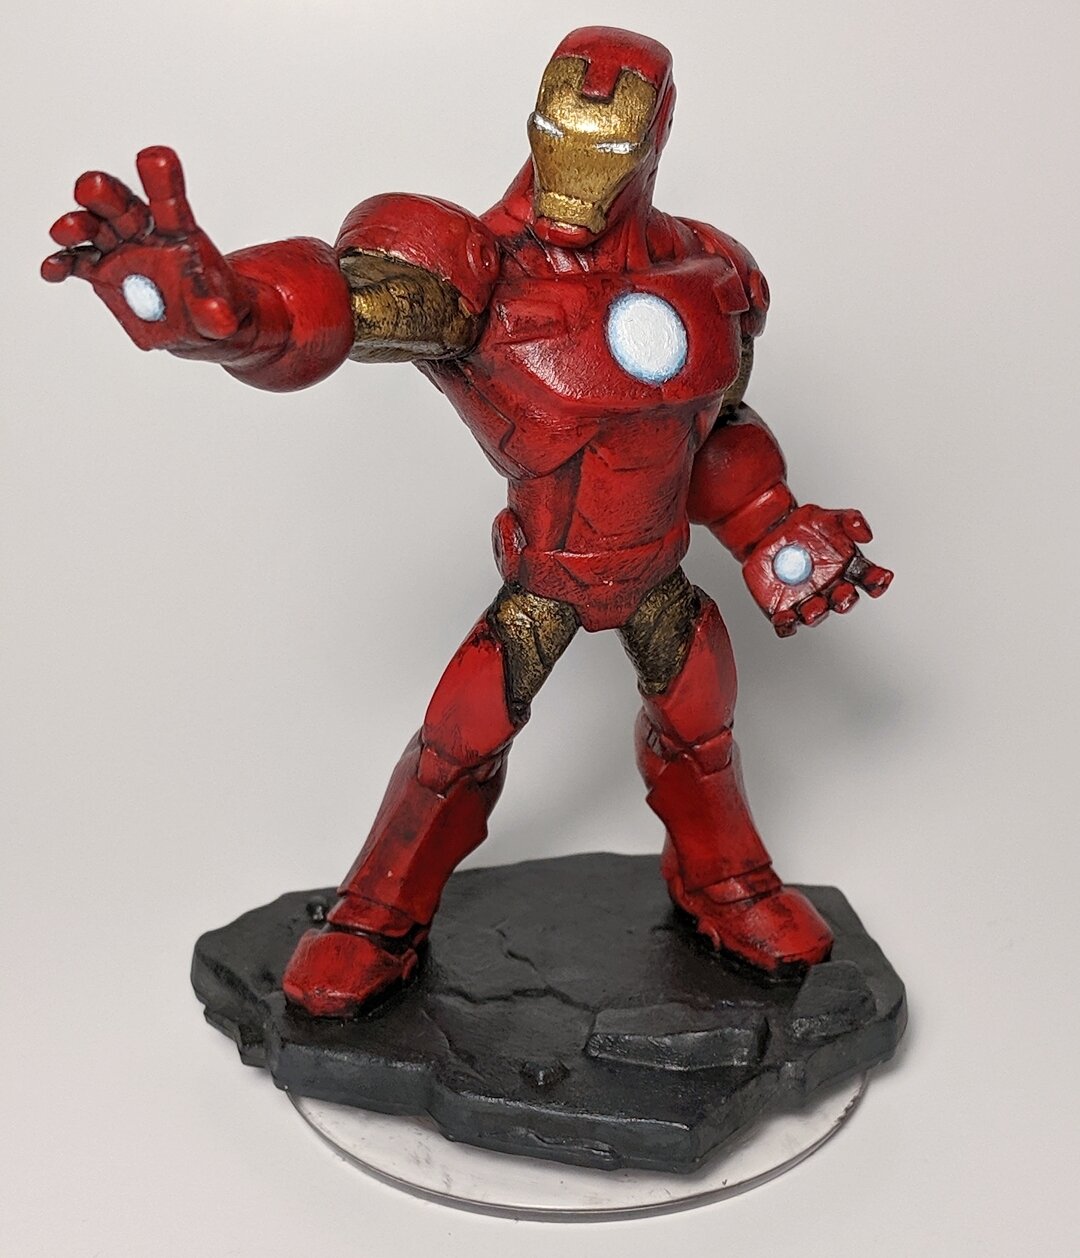 Décoration de figurines Super Hero IronMan »Thecrazyfifties.es